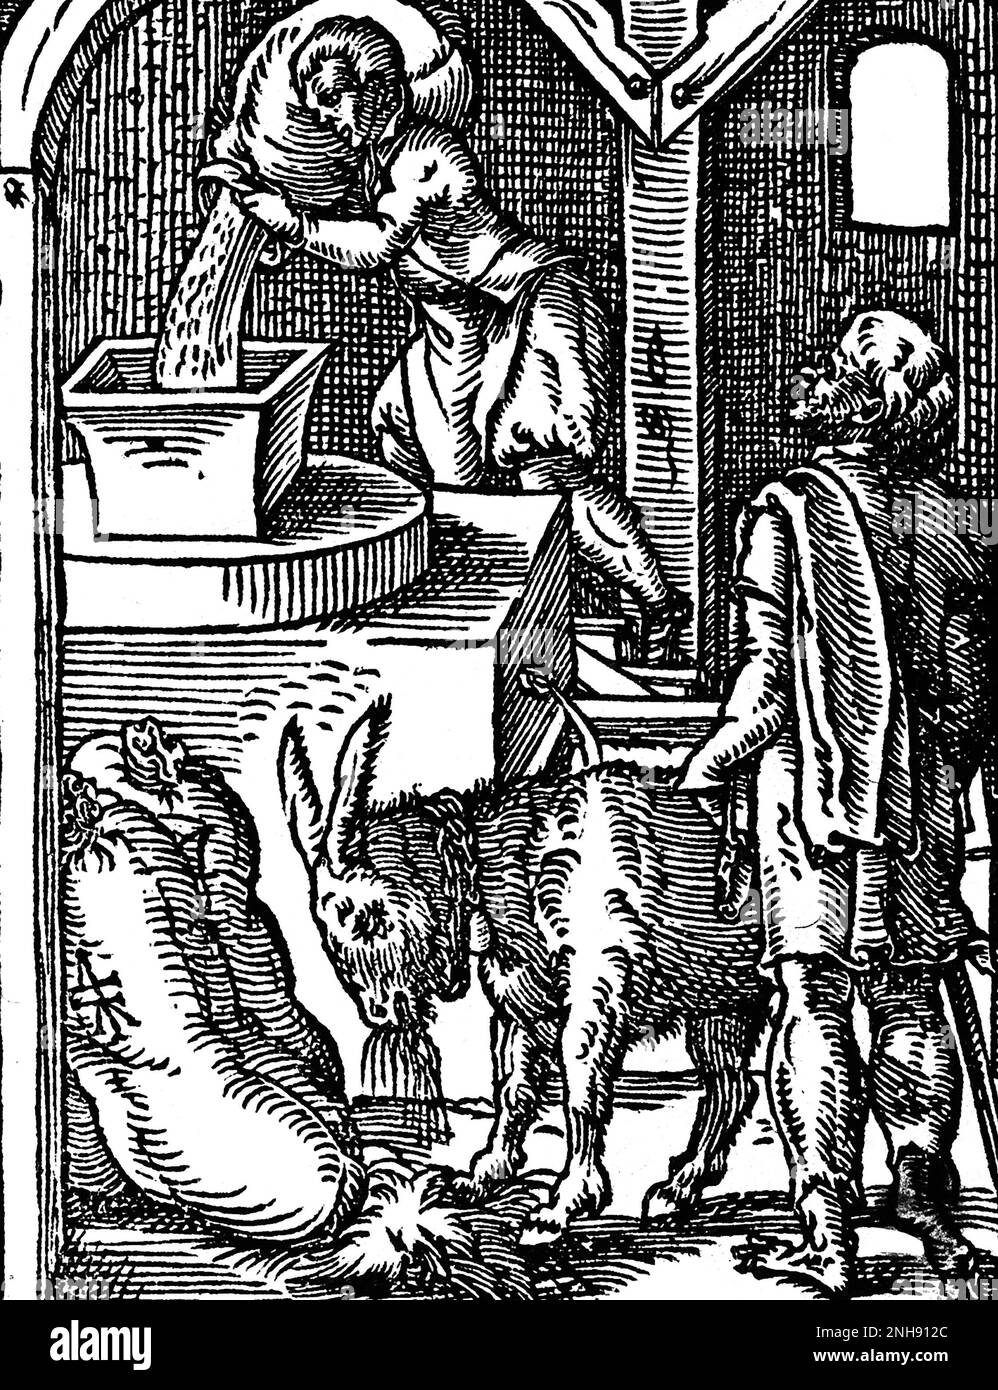 Un miller verse le grain dans un moulin à partir d'un sac apporté par un âne. Illustration du Livre des métiers de Jost Amman, 1568. Banque D'Images